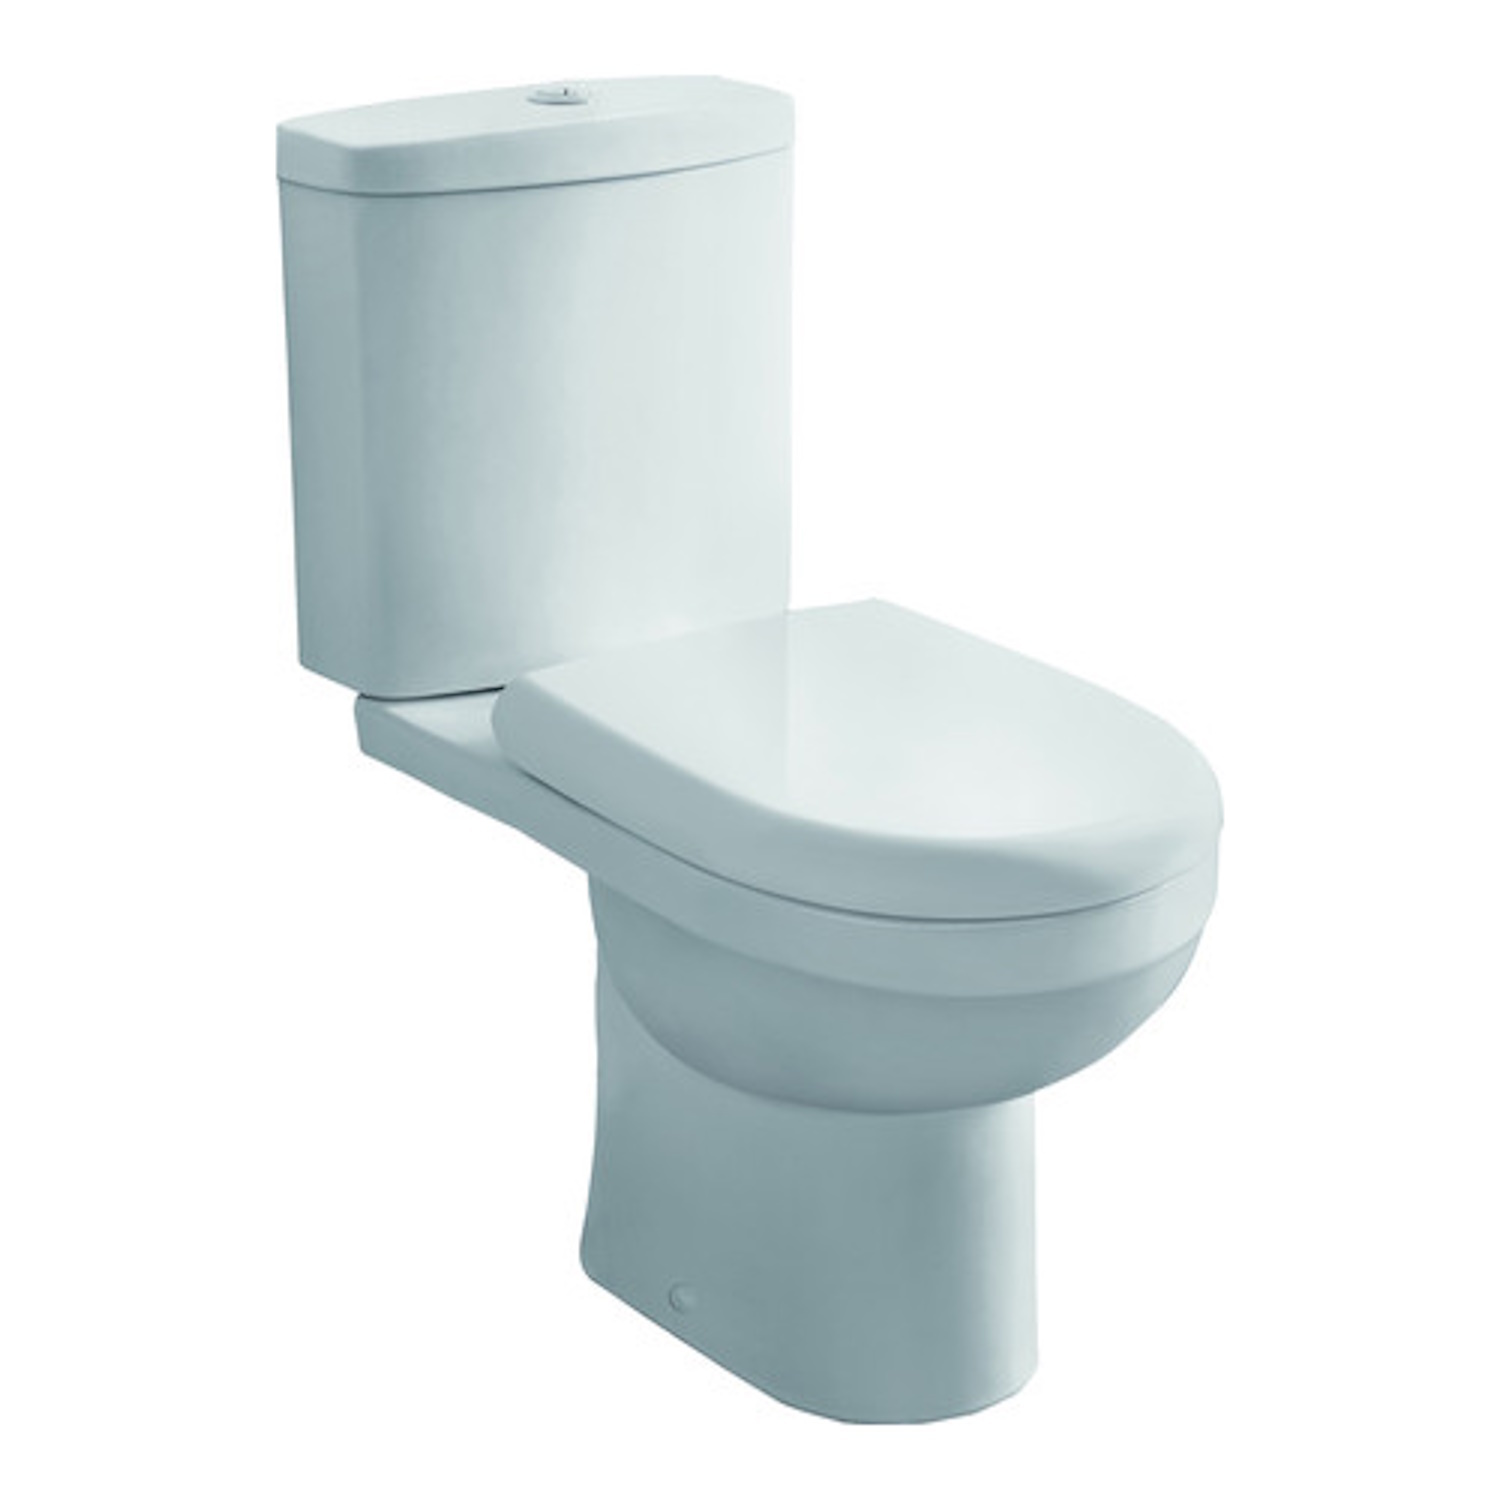 Duoblok VM Cobra Compleet Staand Toilet Go by Van Marcke